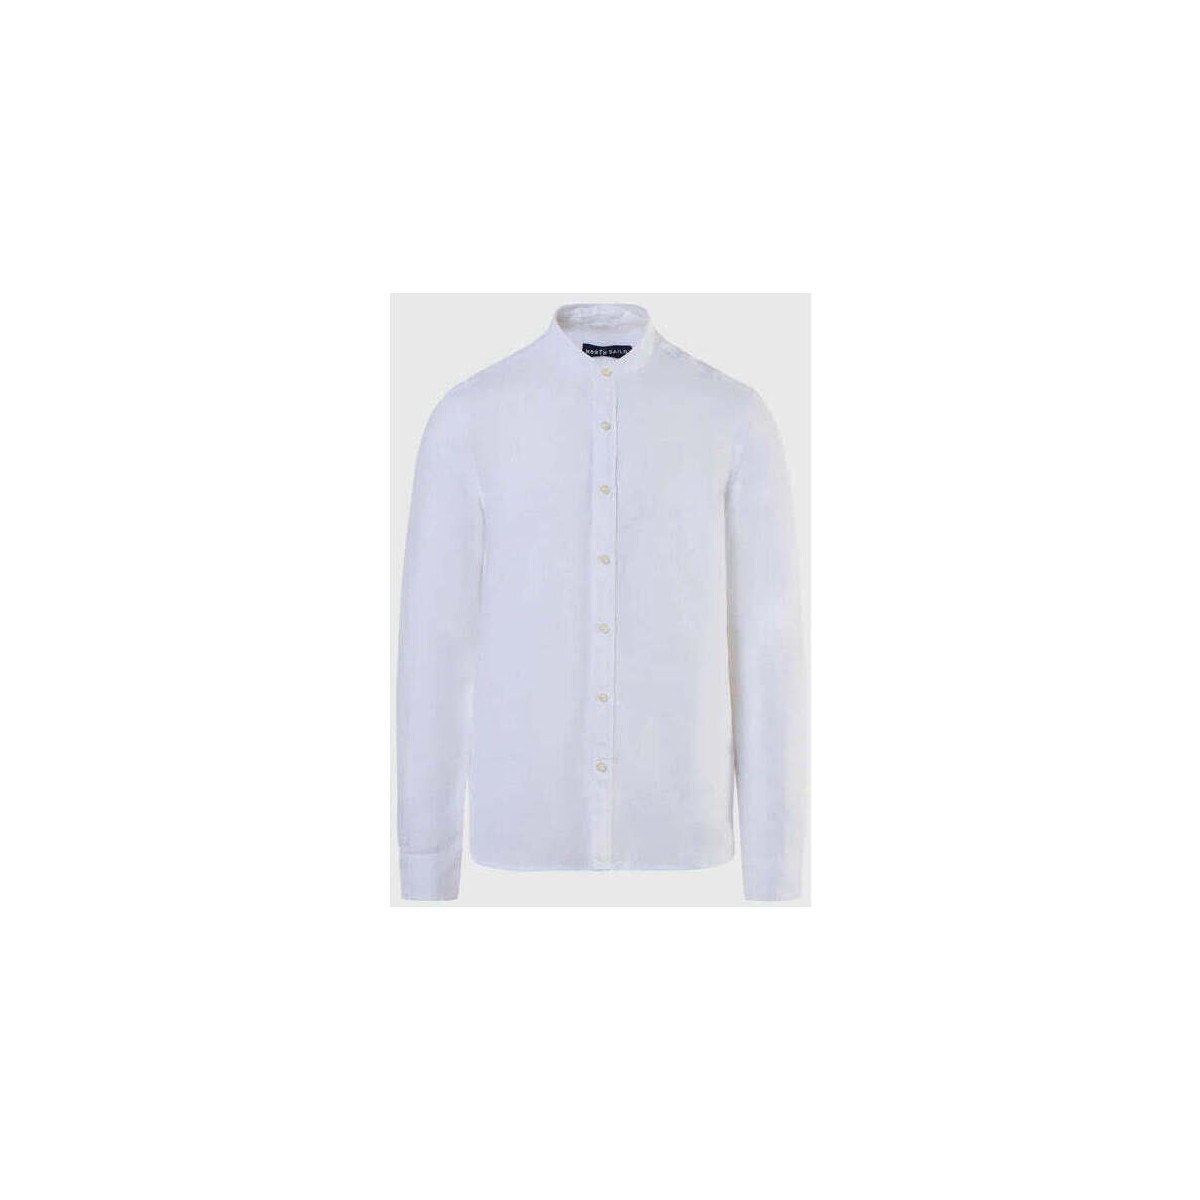 Abbigliamento Uomo Camicie maniche lunghe North Sails camicia bianca alla coreana Bianco